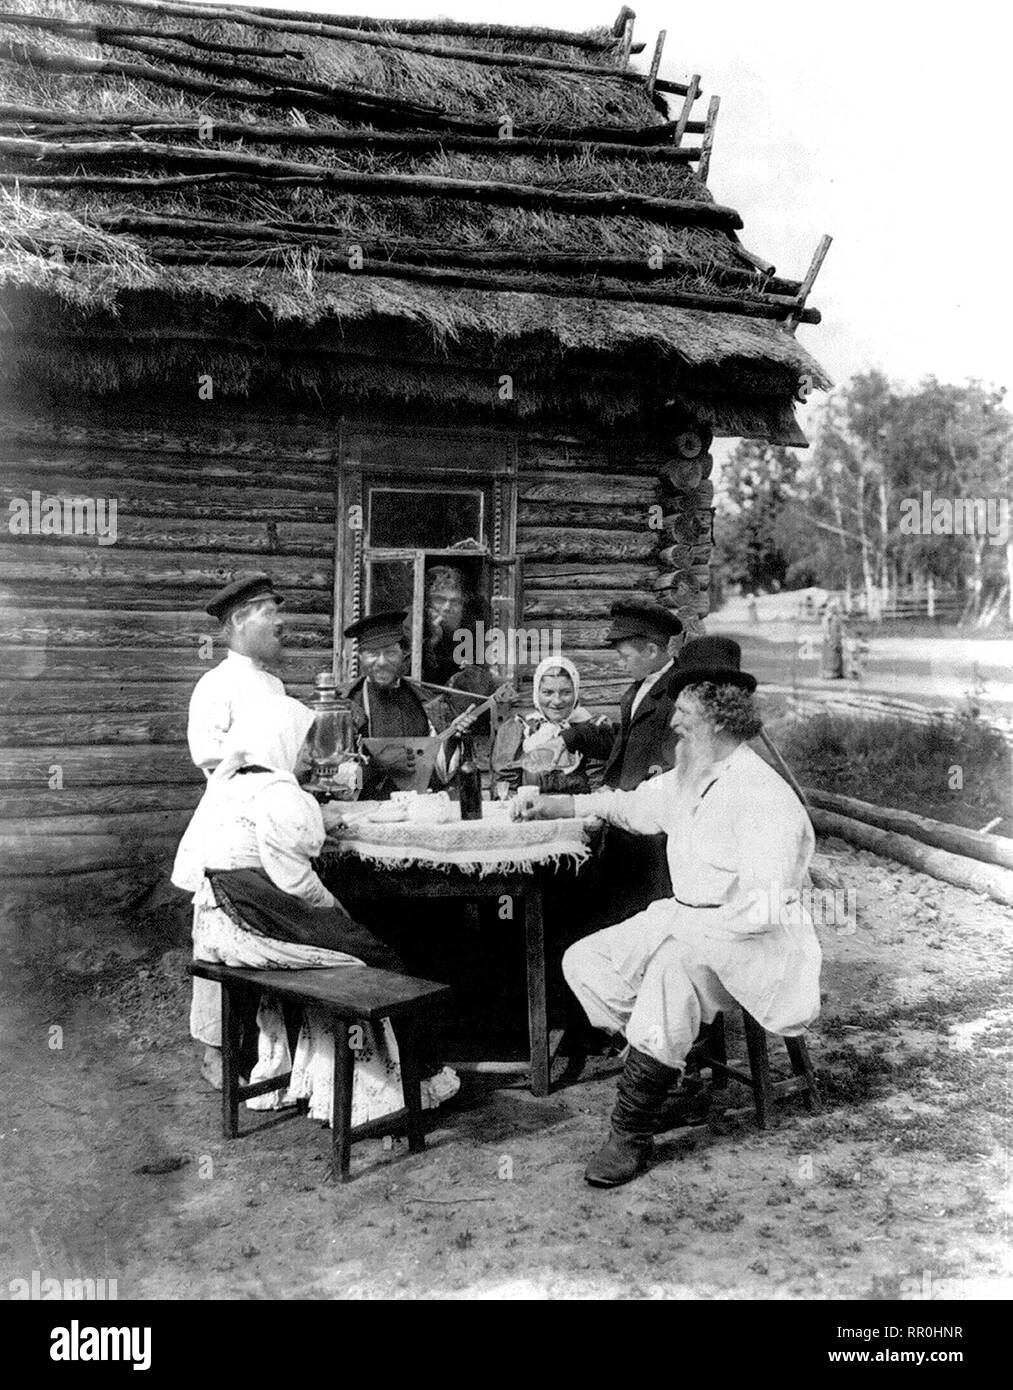 Genre scène vue inclut l'homme avec de la balalaïka, samovar sur la table, verser à boire, l'homme garçon par fenêtre et d'autres assis à table à l'extérieur d'une maison au toit de chaume. S paysan russe 1875 Banque D'Images